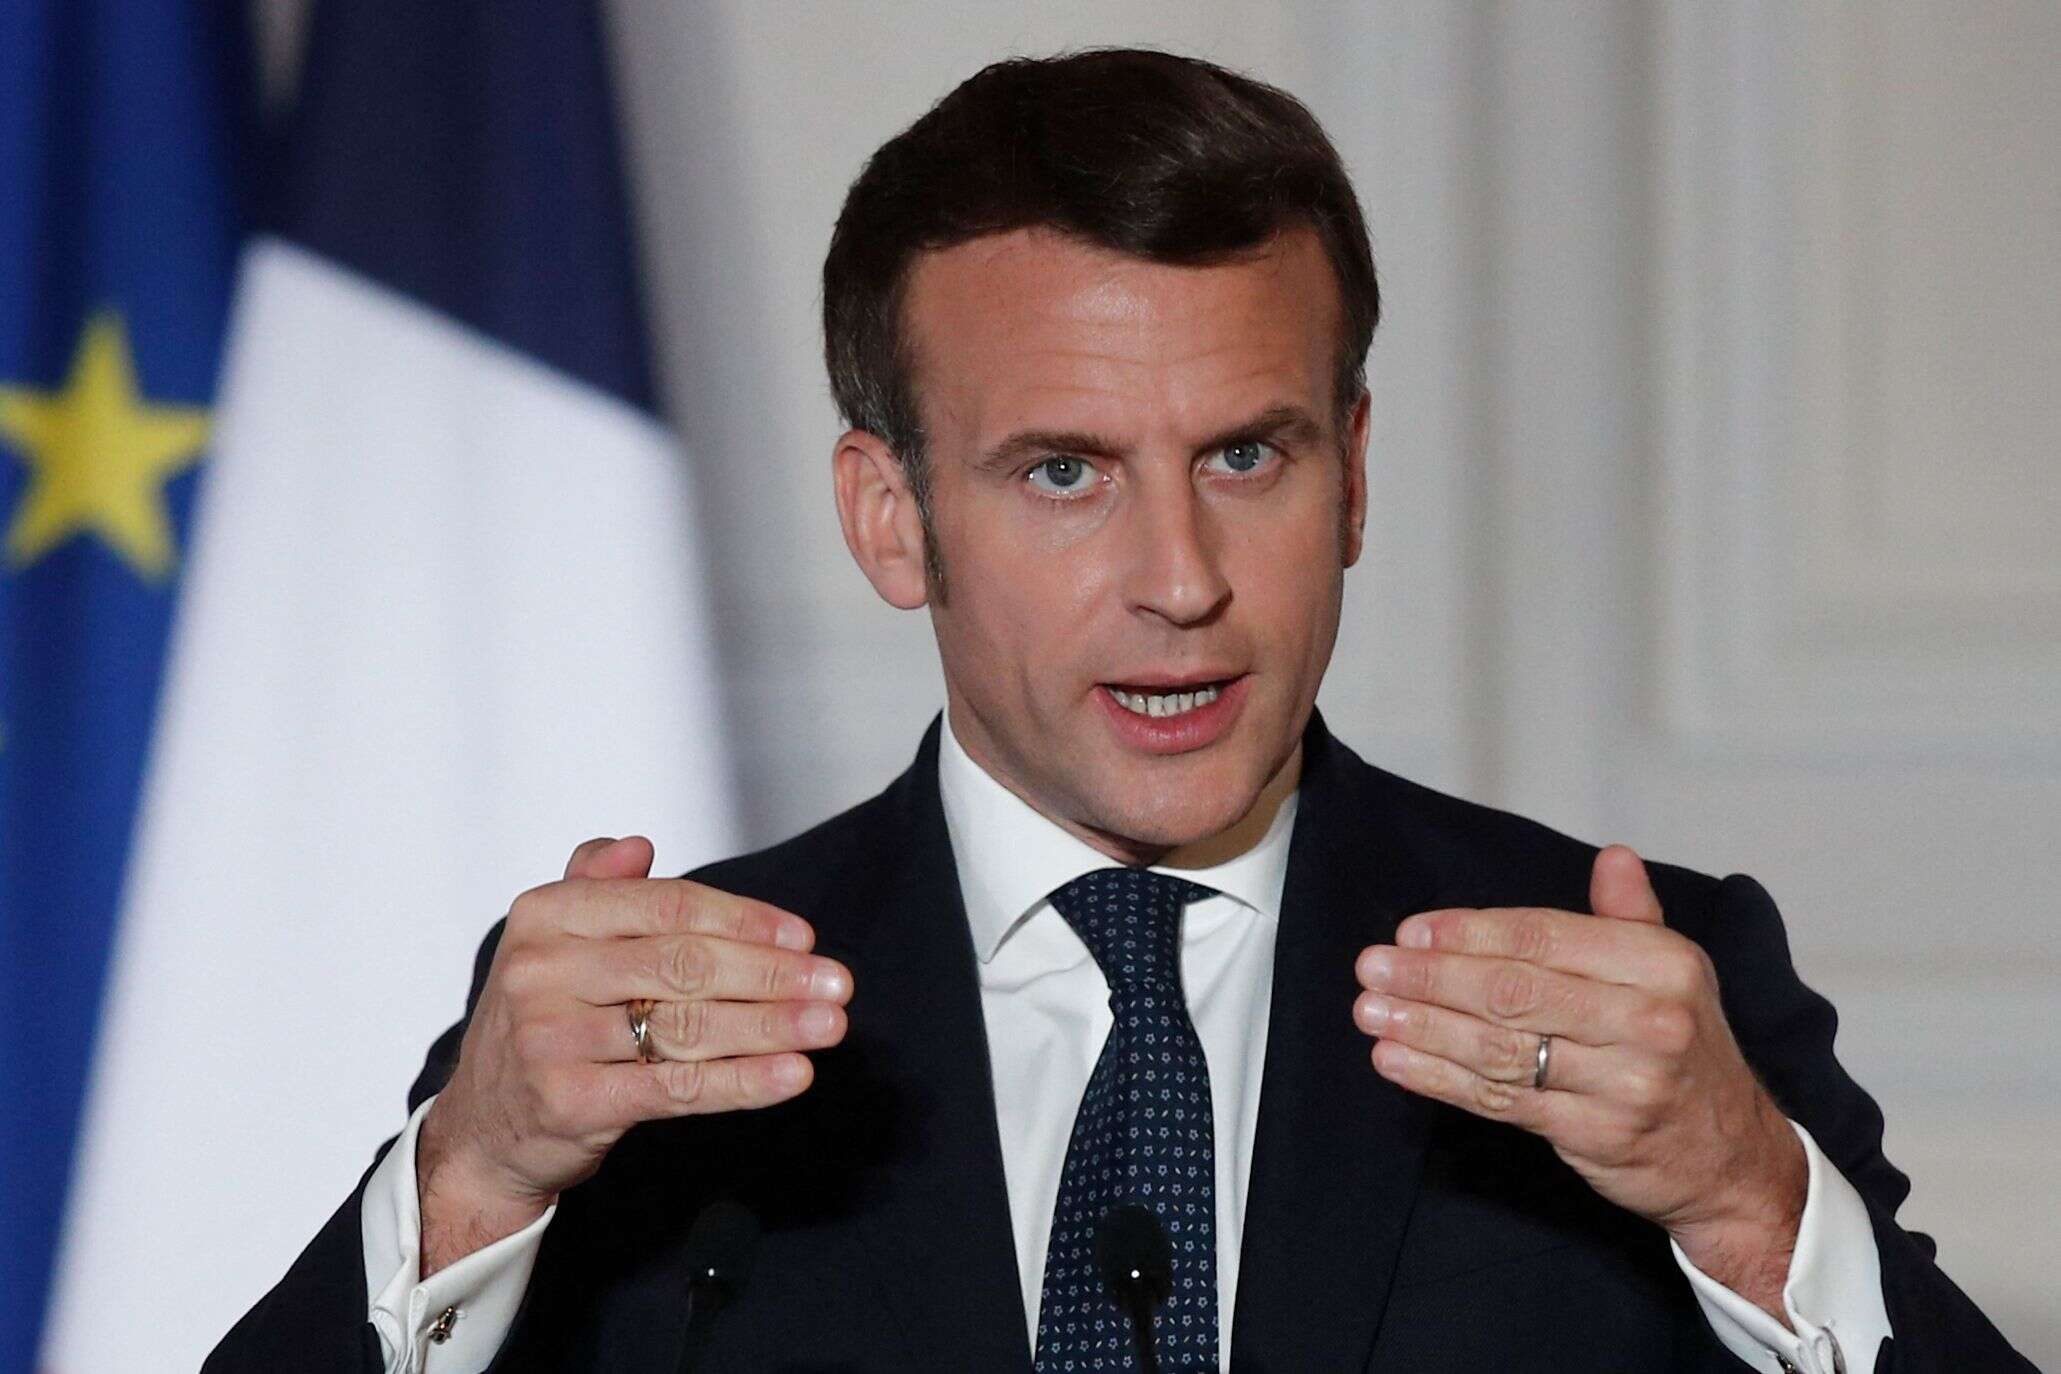 Le président, Emmanuel Macron. Paris, le 25 mars 2021. (BENOIT TESSIER / POOL / AFP)